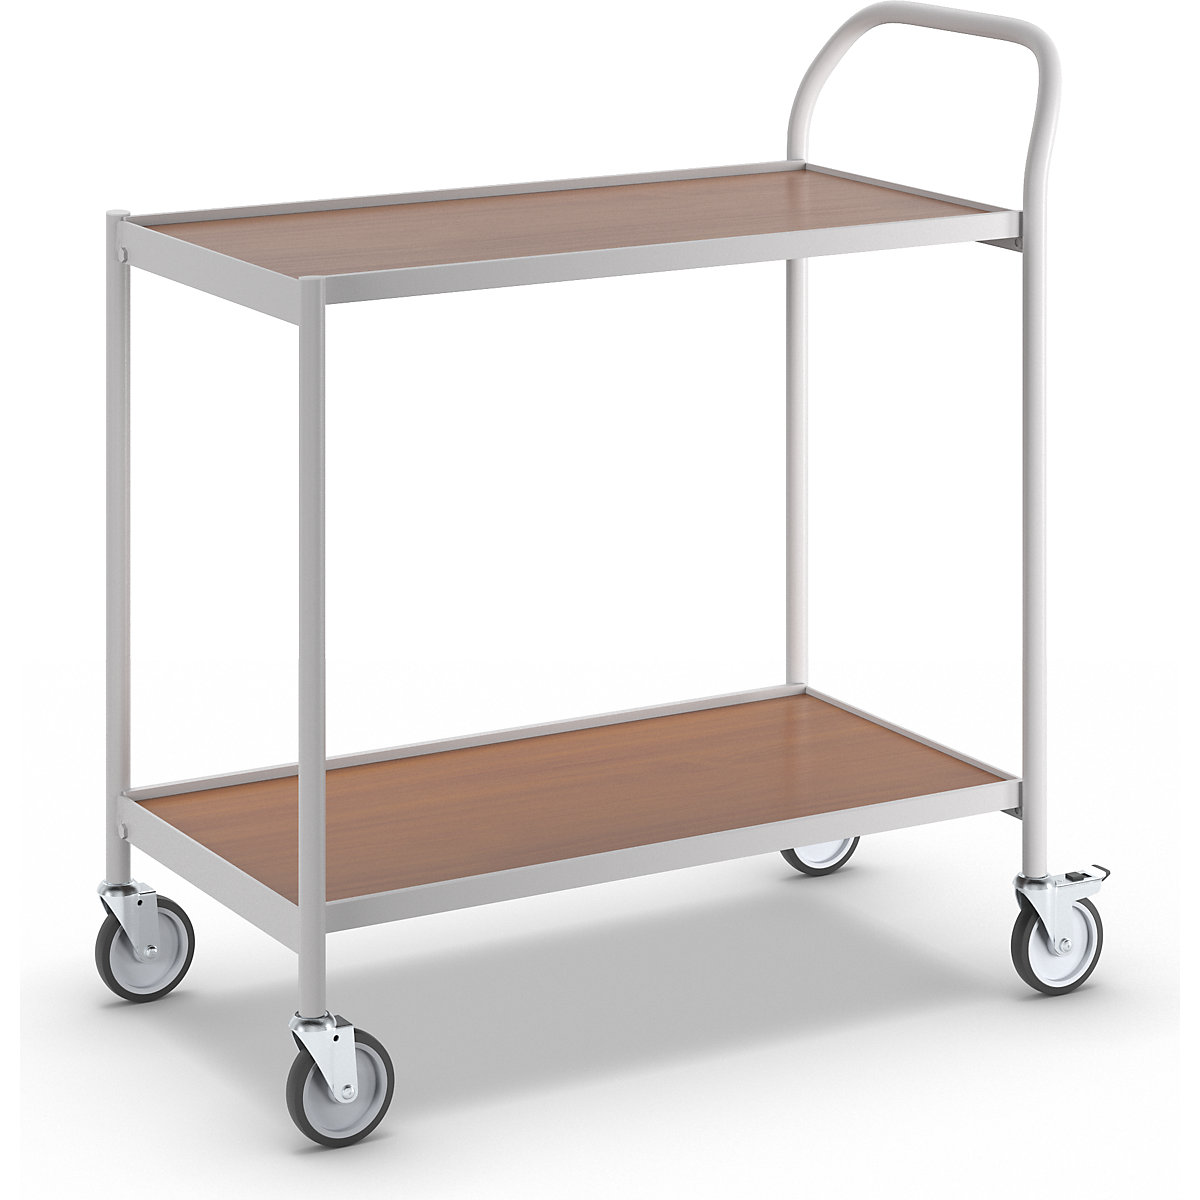 Stolový vozík – HelgeNyberg, 2 etáže, d x š 800 x 420 mm, šedá / buk-4